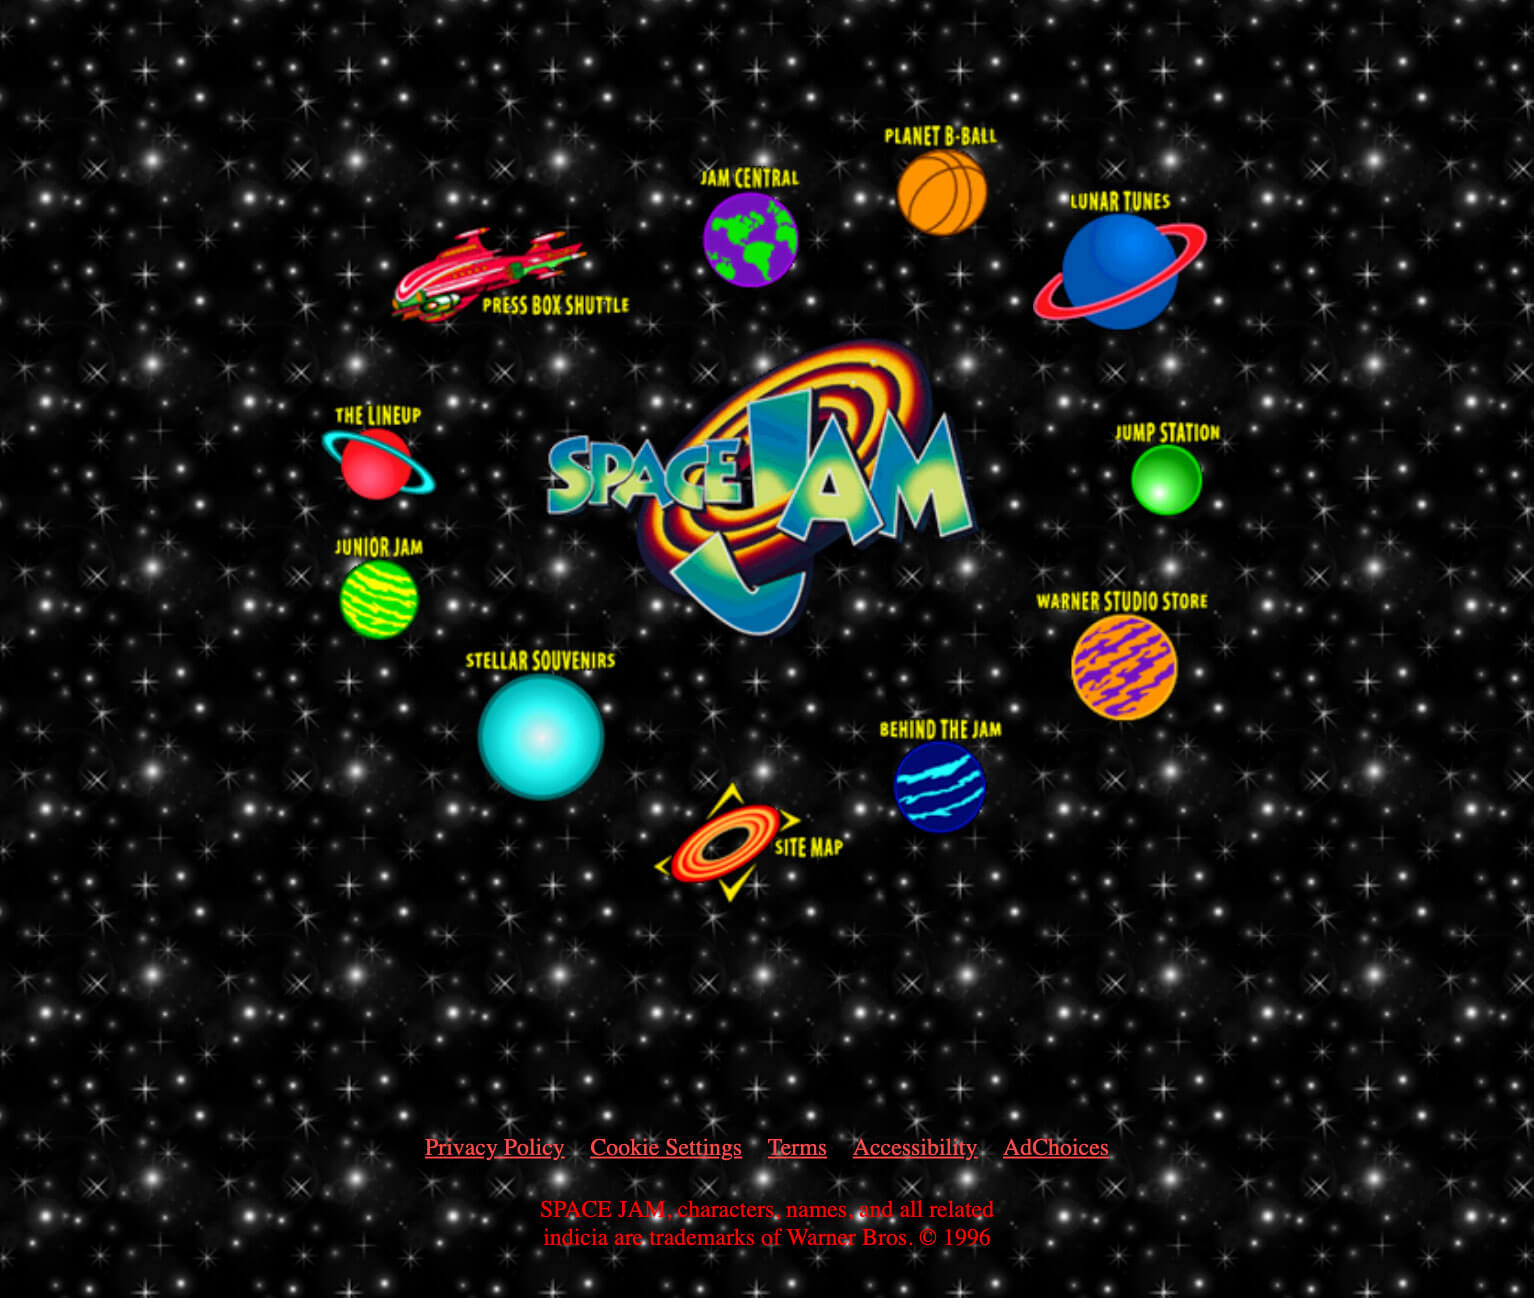 Image de la page d'accueil du site Space Jam en 1996